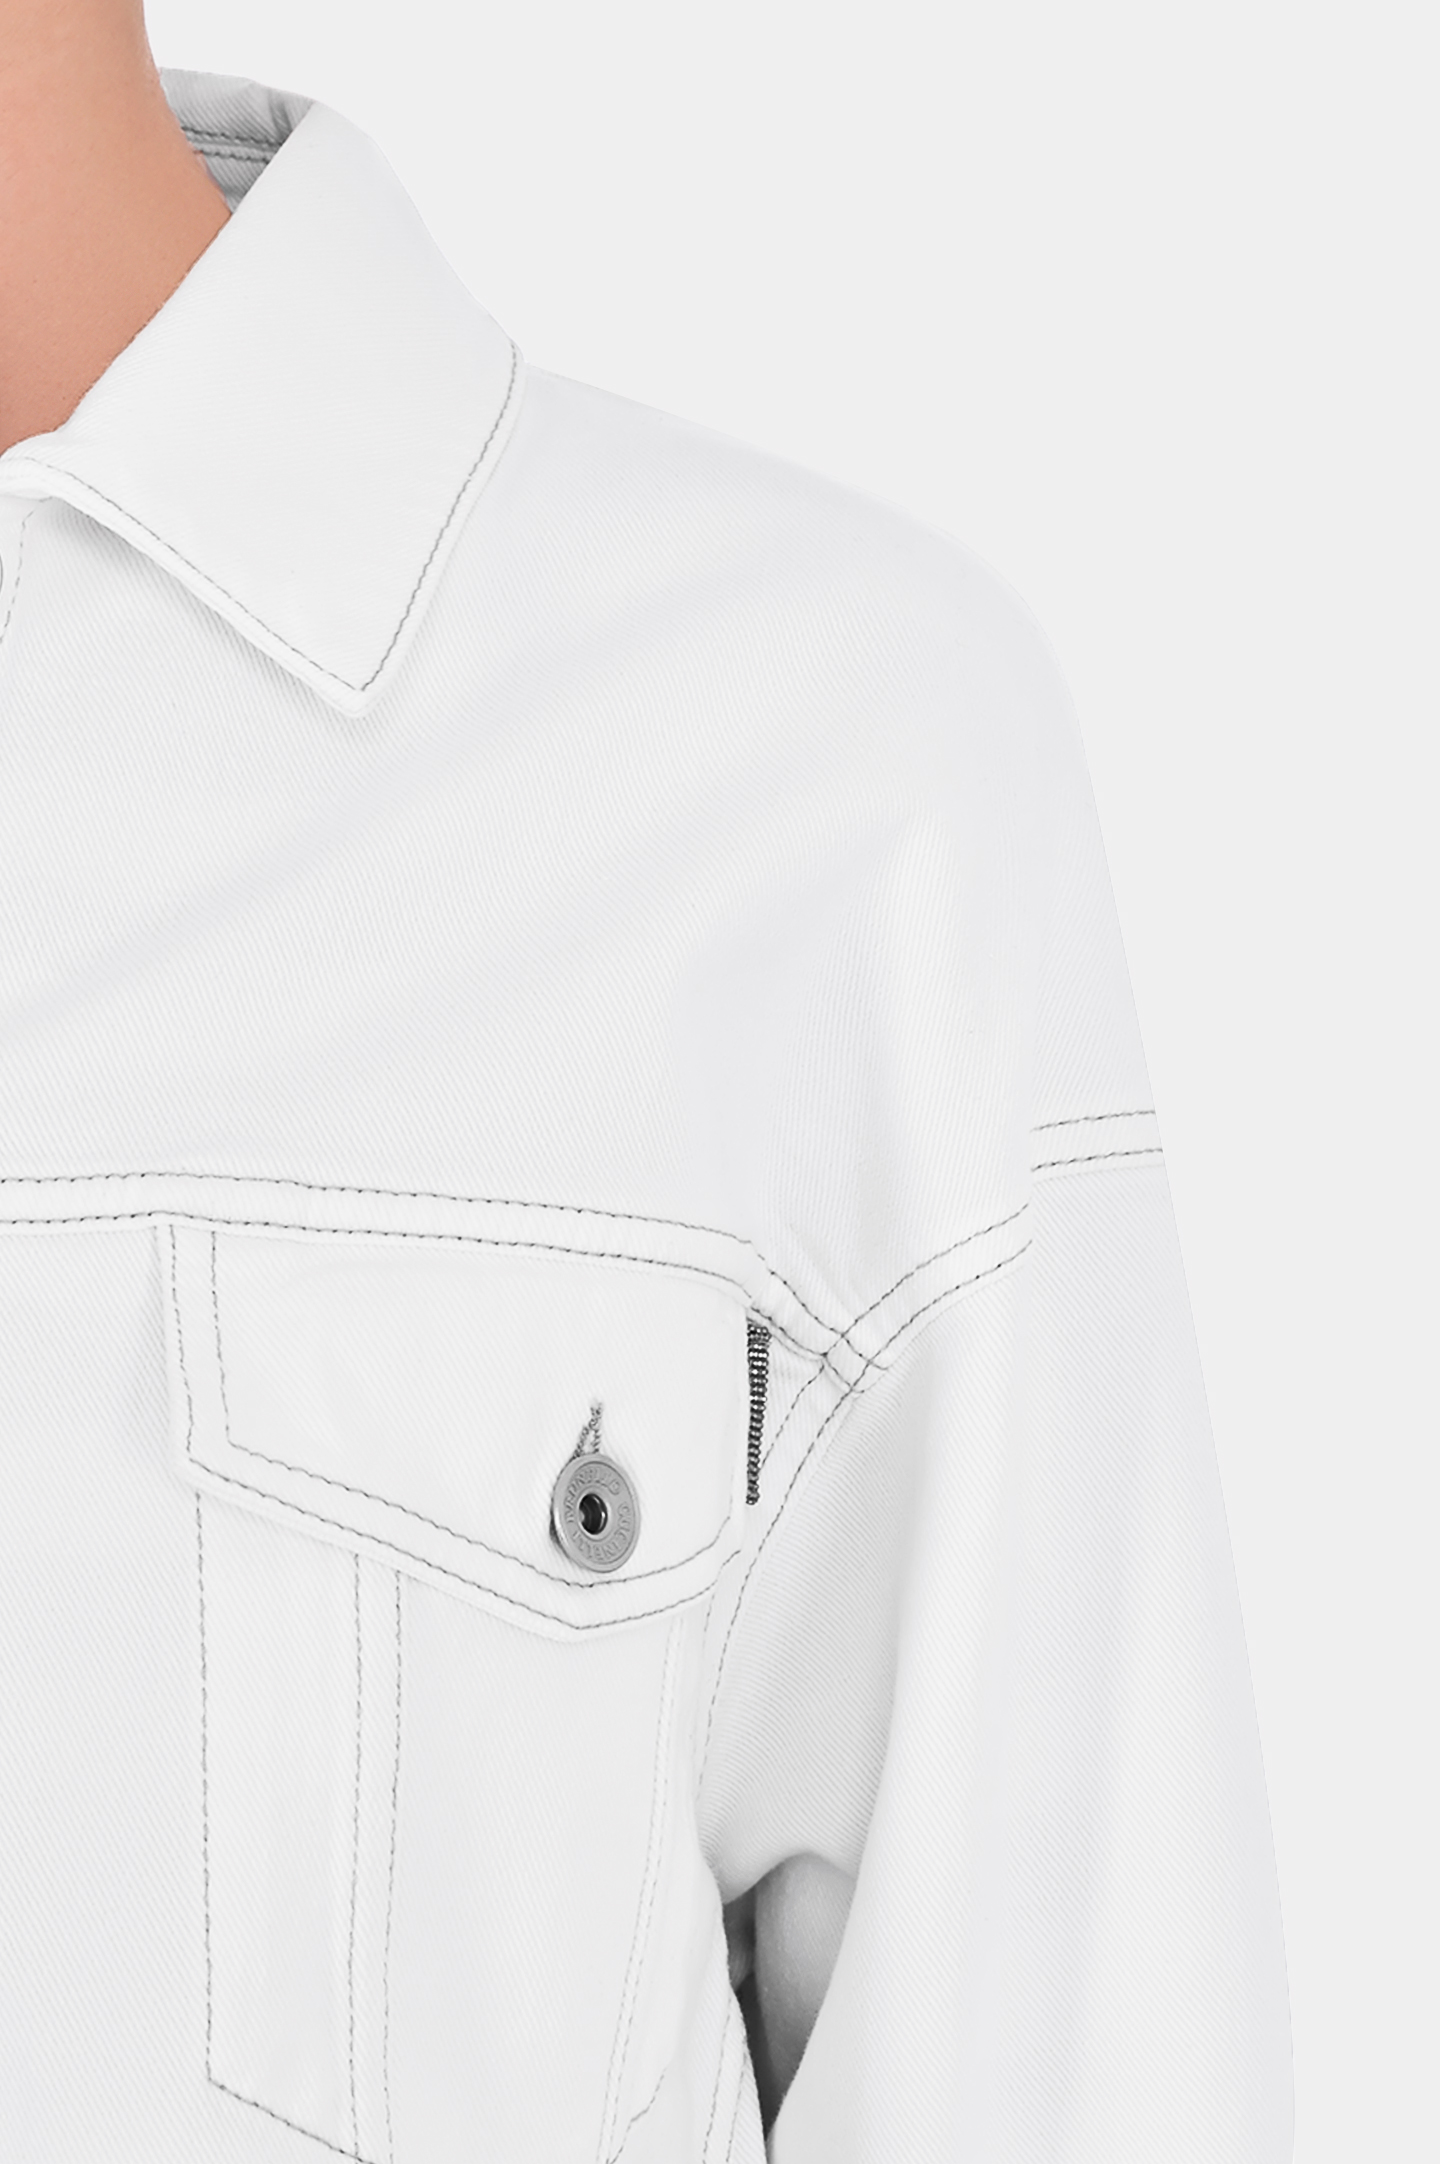 Джинсовая куртка с карманами BRUNELLO  CUCINELLI MB0572989, цвет: Белый, Женский